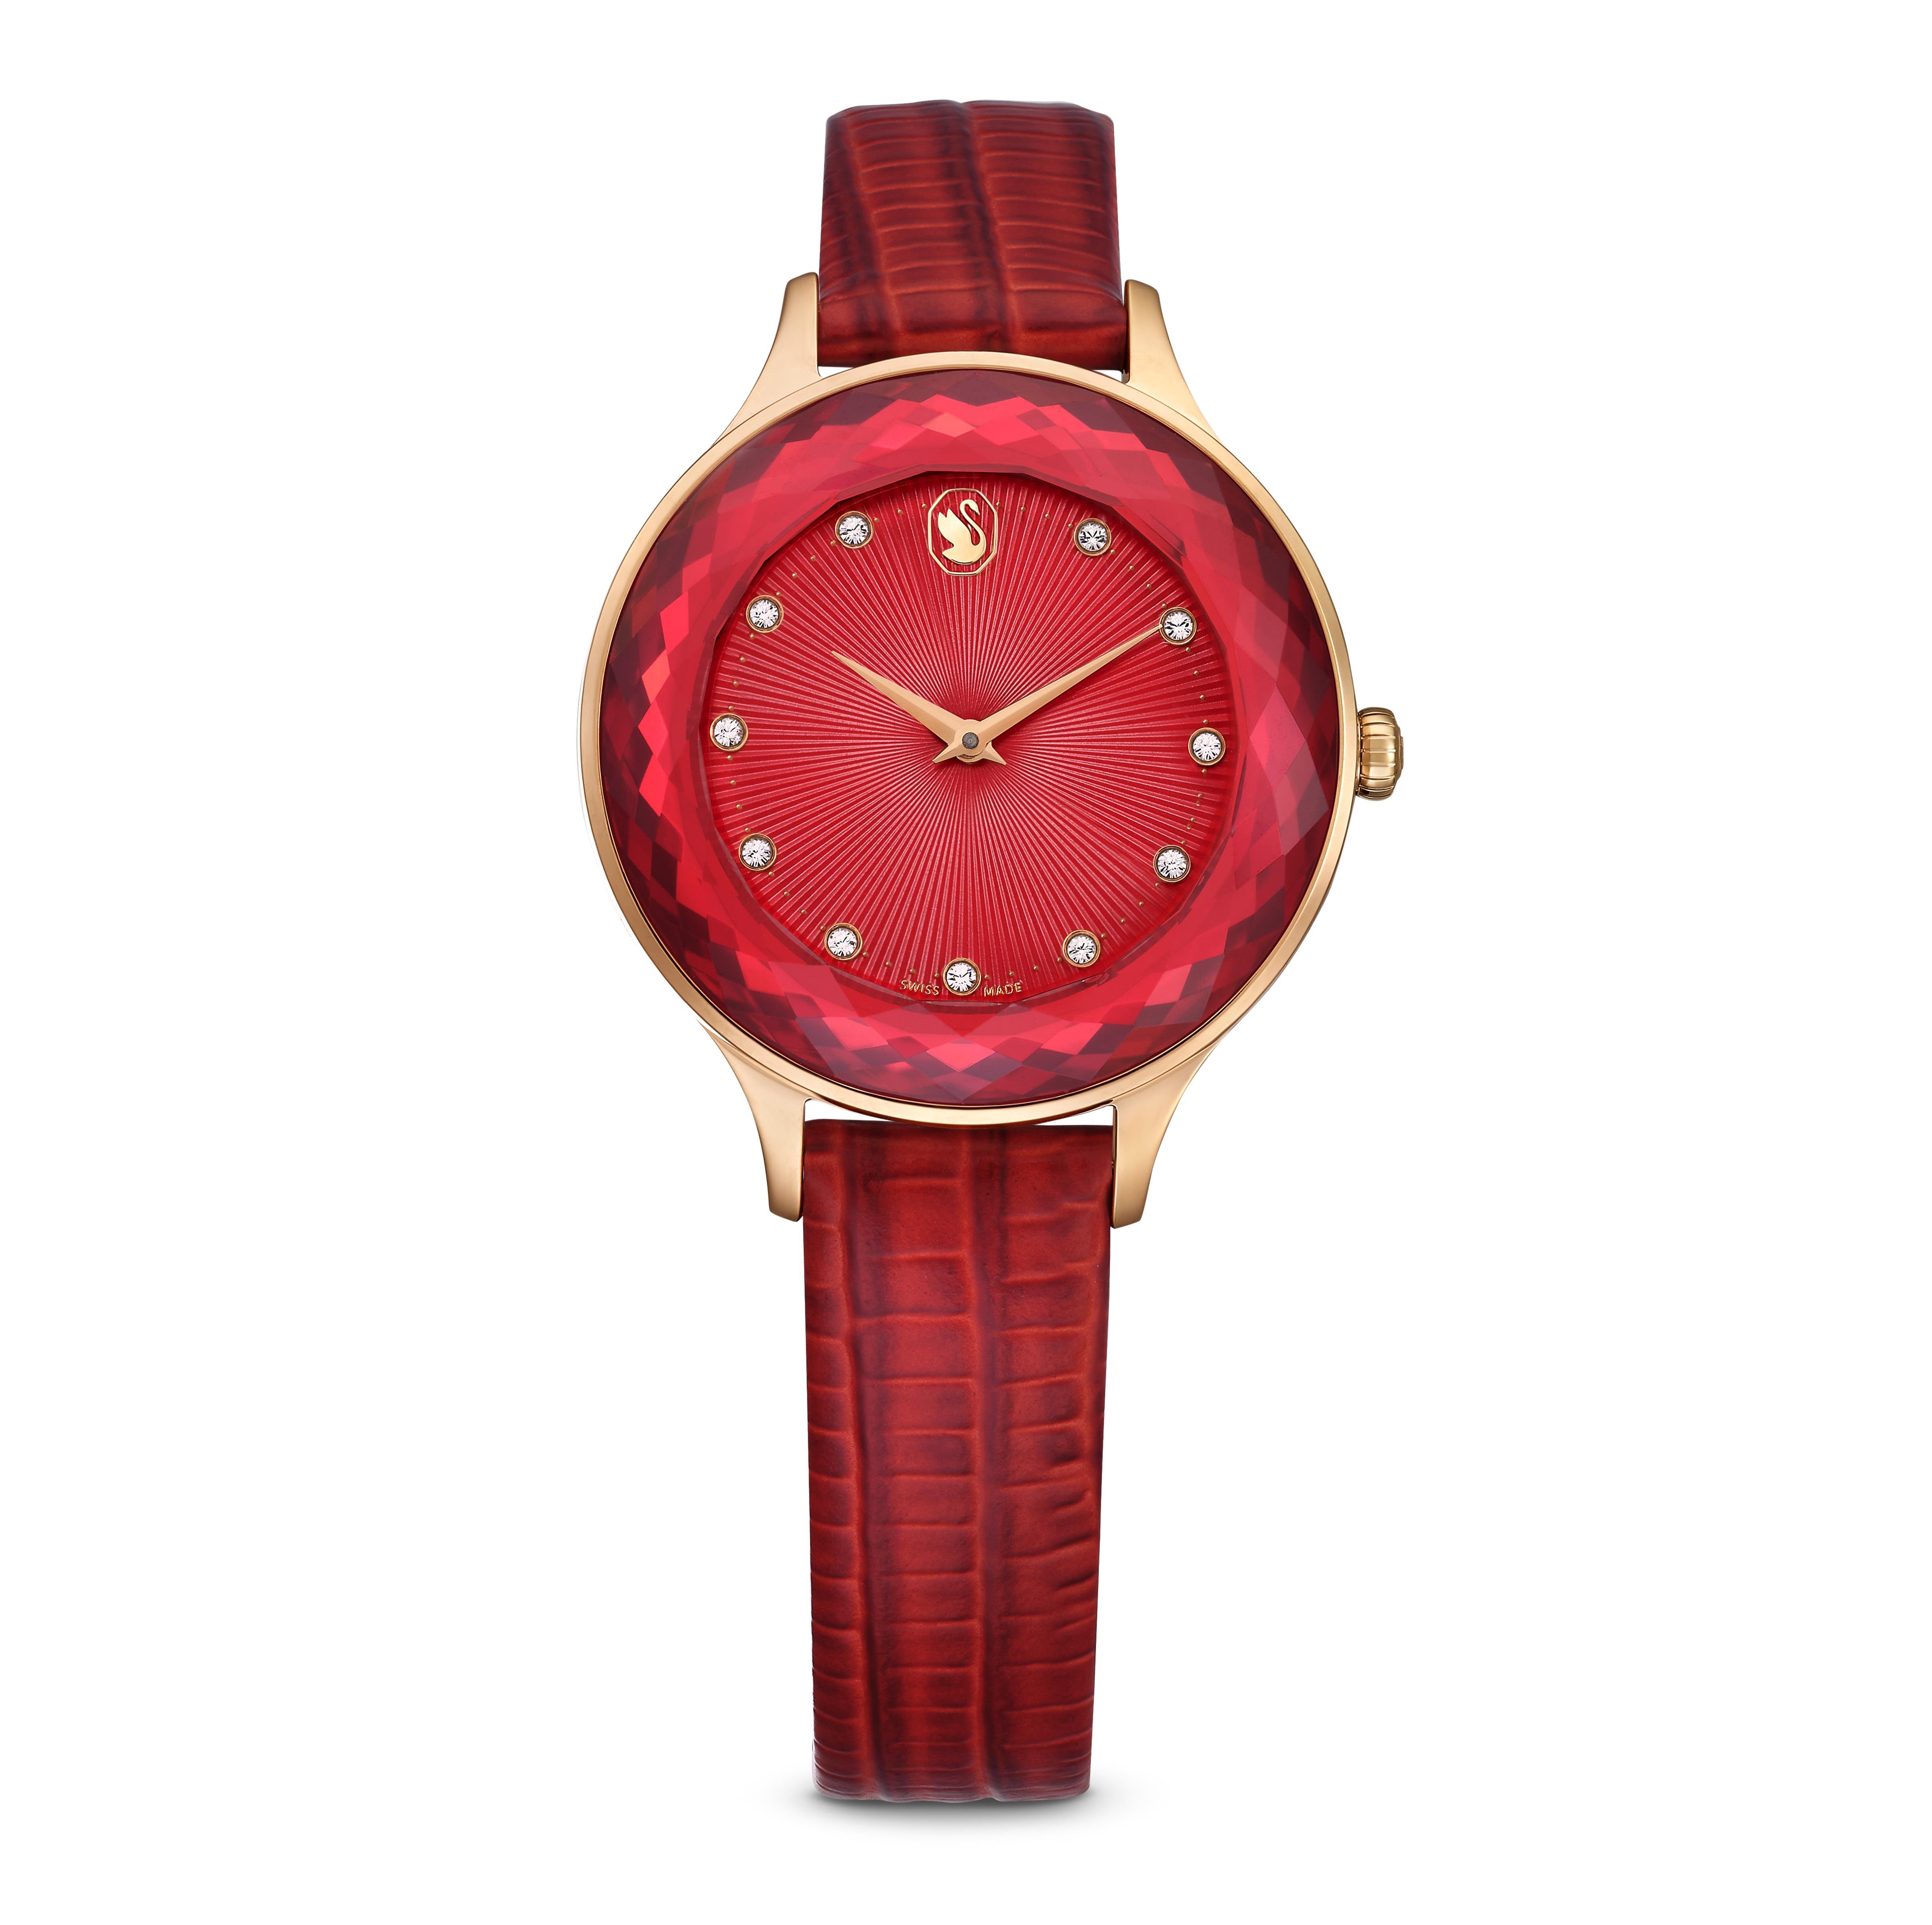 Octea Nova Saat, İsviçre Üretimi, Kırmızı, Pembe altın rengi yüzey